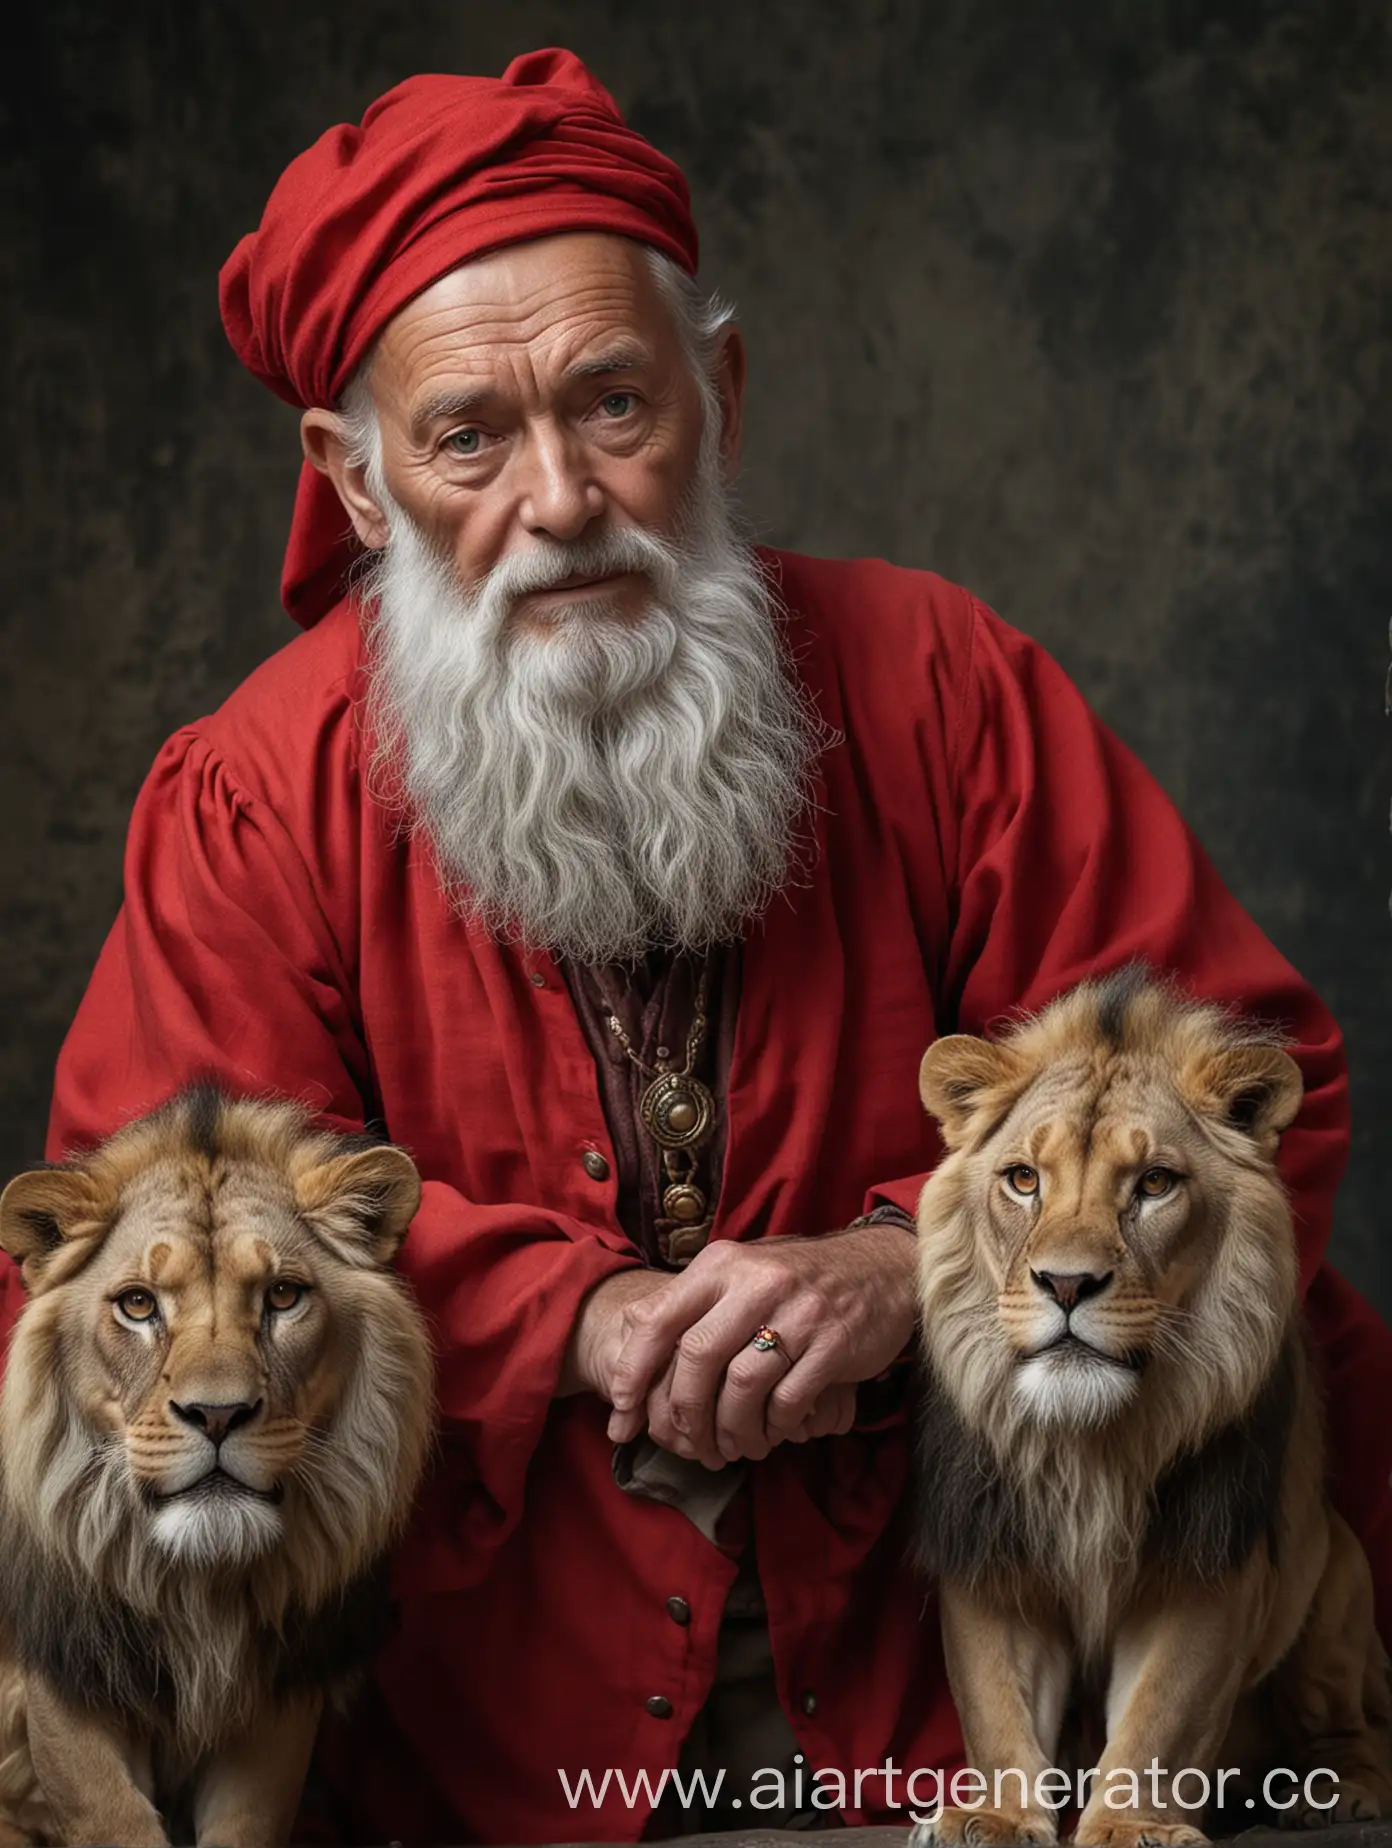 Пожилой мужчина, седой, с бородой, смотрит прямо, взгляд мудрого человека,  подбородок подперт рукой. Красная одежда, перстень, у ног два льва